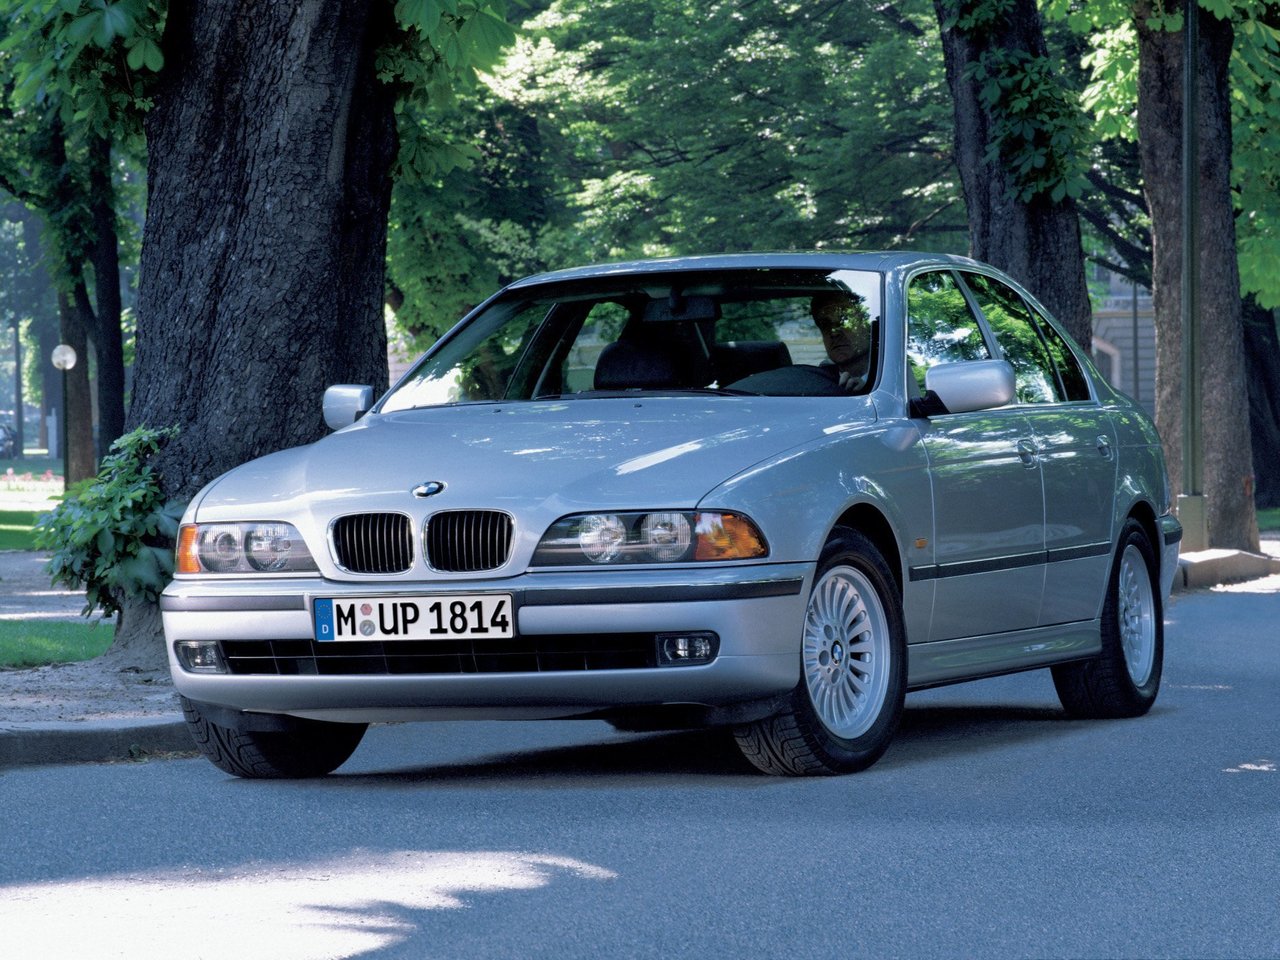 Расход газа десяти комплектаций седана BMW 5 серия. Разница стоимости заправки газом и бензином. Автономный пробег до и после установки ГБО.